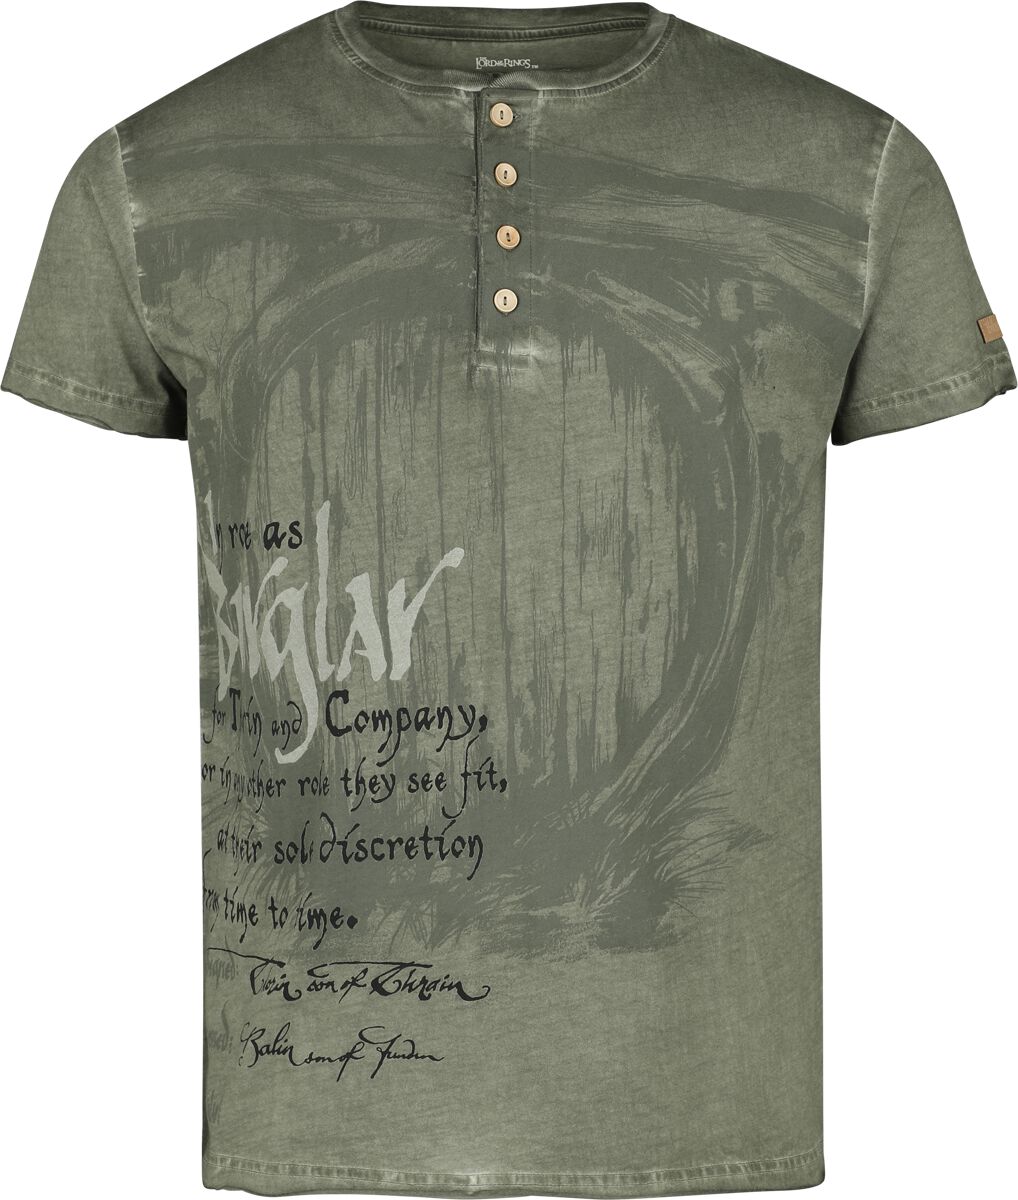 Der Hobbit T-Shirt - Burglar - S bis XXL - für Männer - Größe XL - oliv  - EMP exklusives Merchandise!